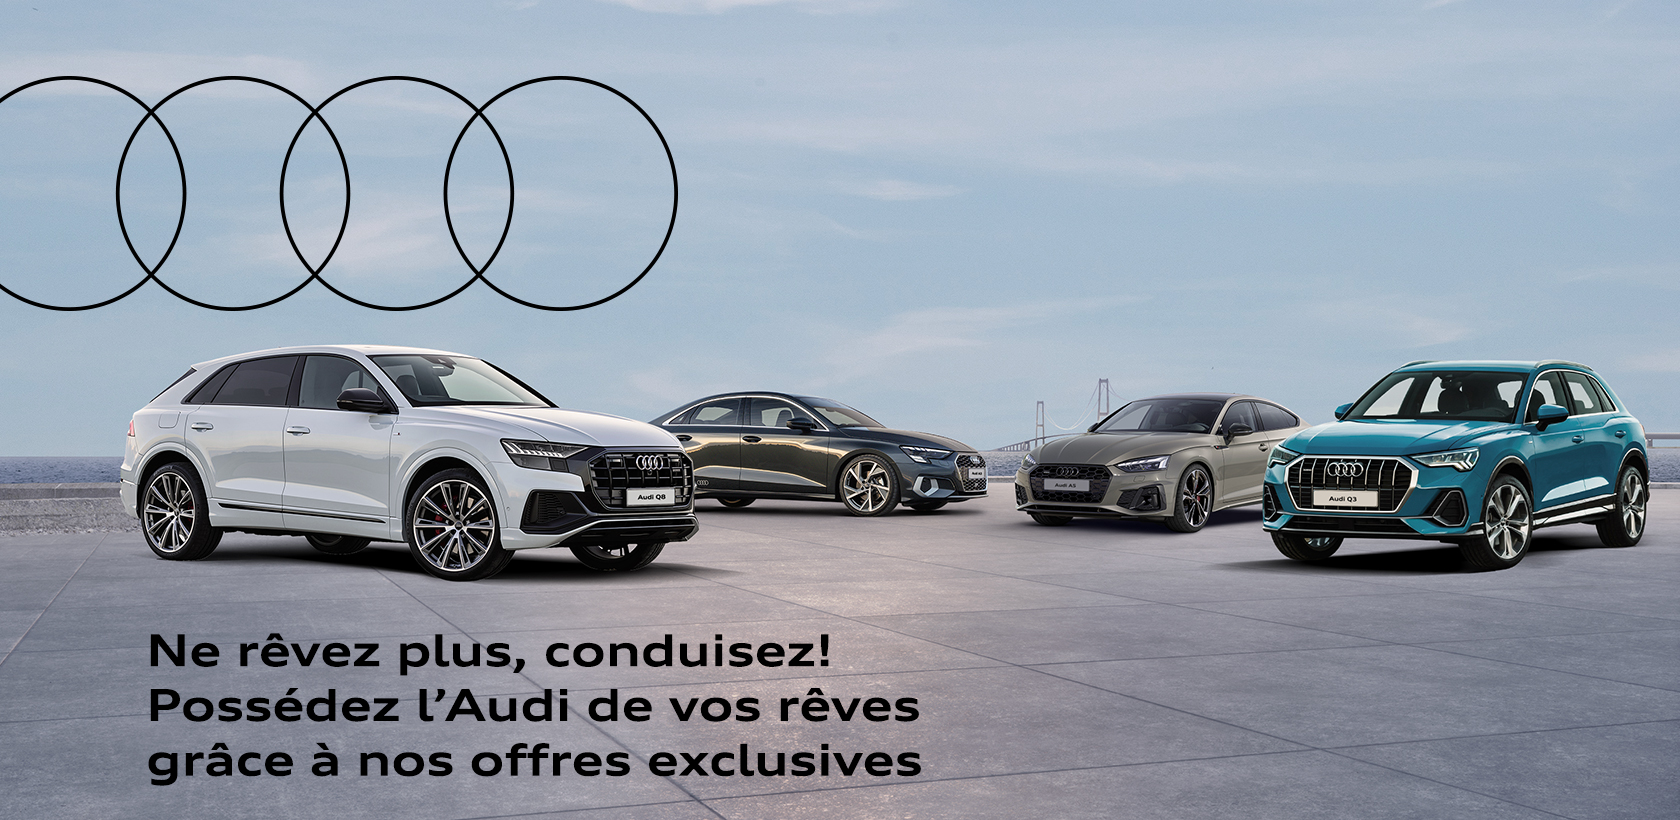 Audi Tunisie annonce des promotions exceptionnelles sur toute sa gamme de voitures pour célébrer la rentrée.